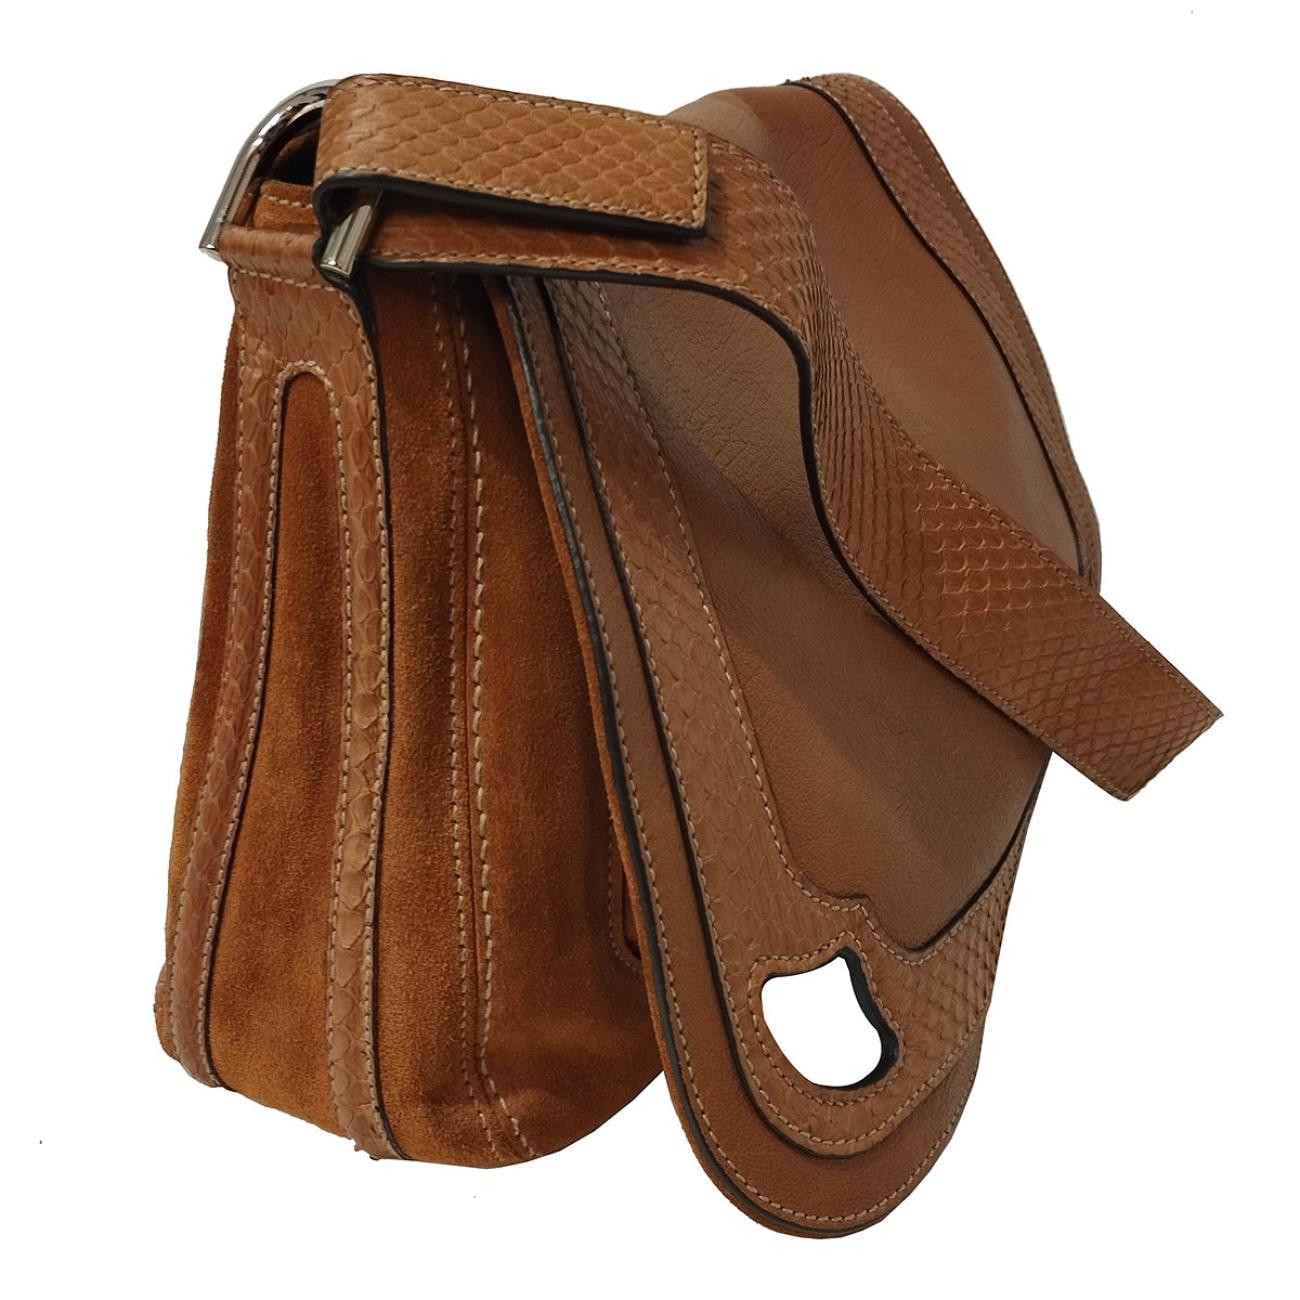 Marcello Satteltasche
Leder
Farbe Cognac
Echtes Pythonband
Kann auch in der Hand getragen werden
Große Außentasche
Zusätzliche Reißverschlusstaschen
Cm 33 x 23 x 11 (12,99 x 9 x 4,33 Zoll)